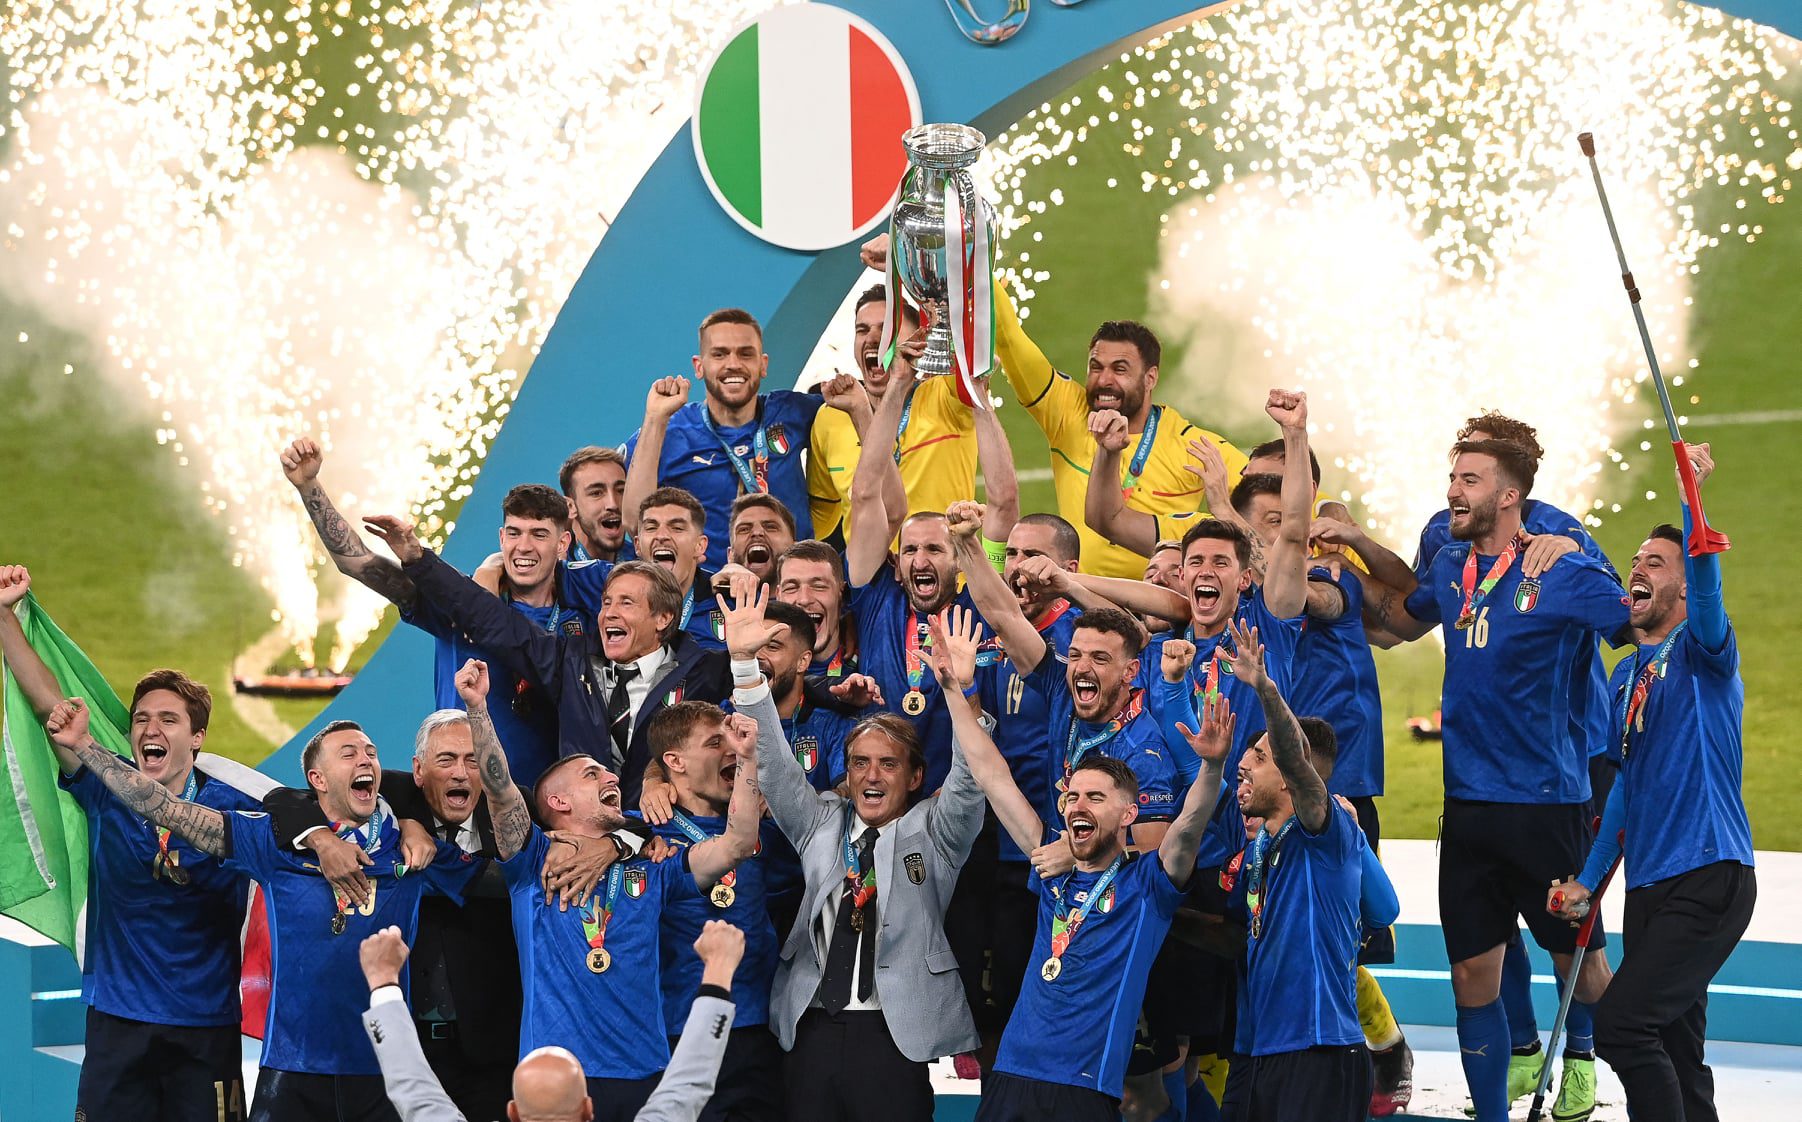 อิตาลี ผงาดแชมป์ฟุตบอลยูโร 2020 สมัยที่ 2 หลังเอาชนะจุดโทษอังกฤษ 3-2